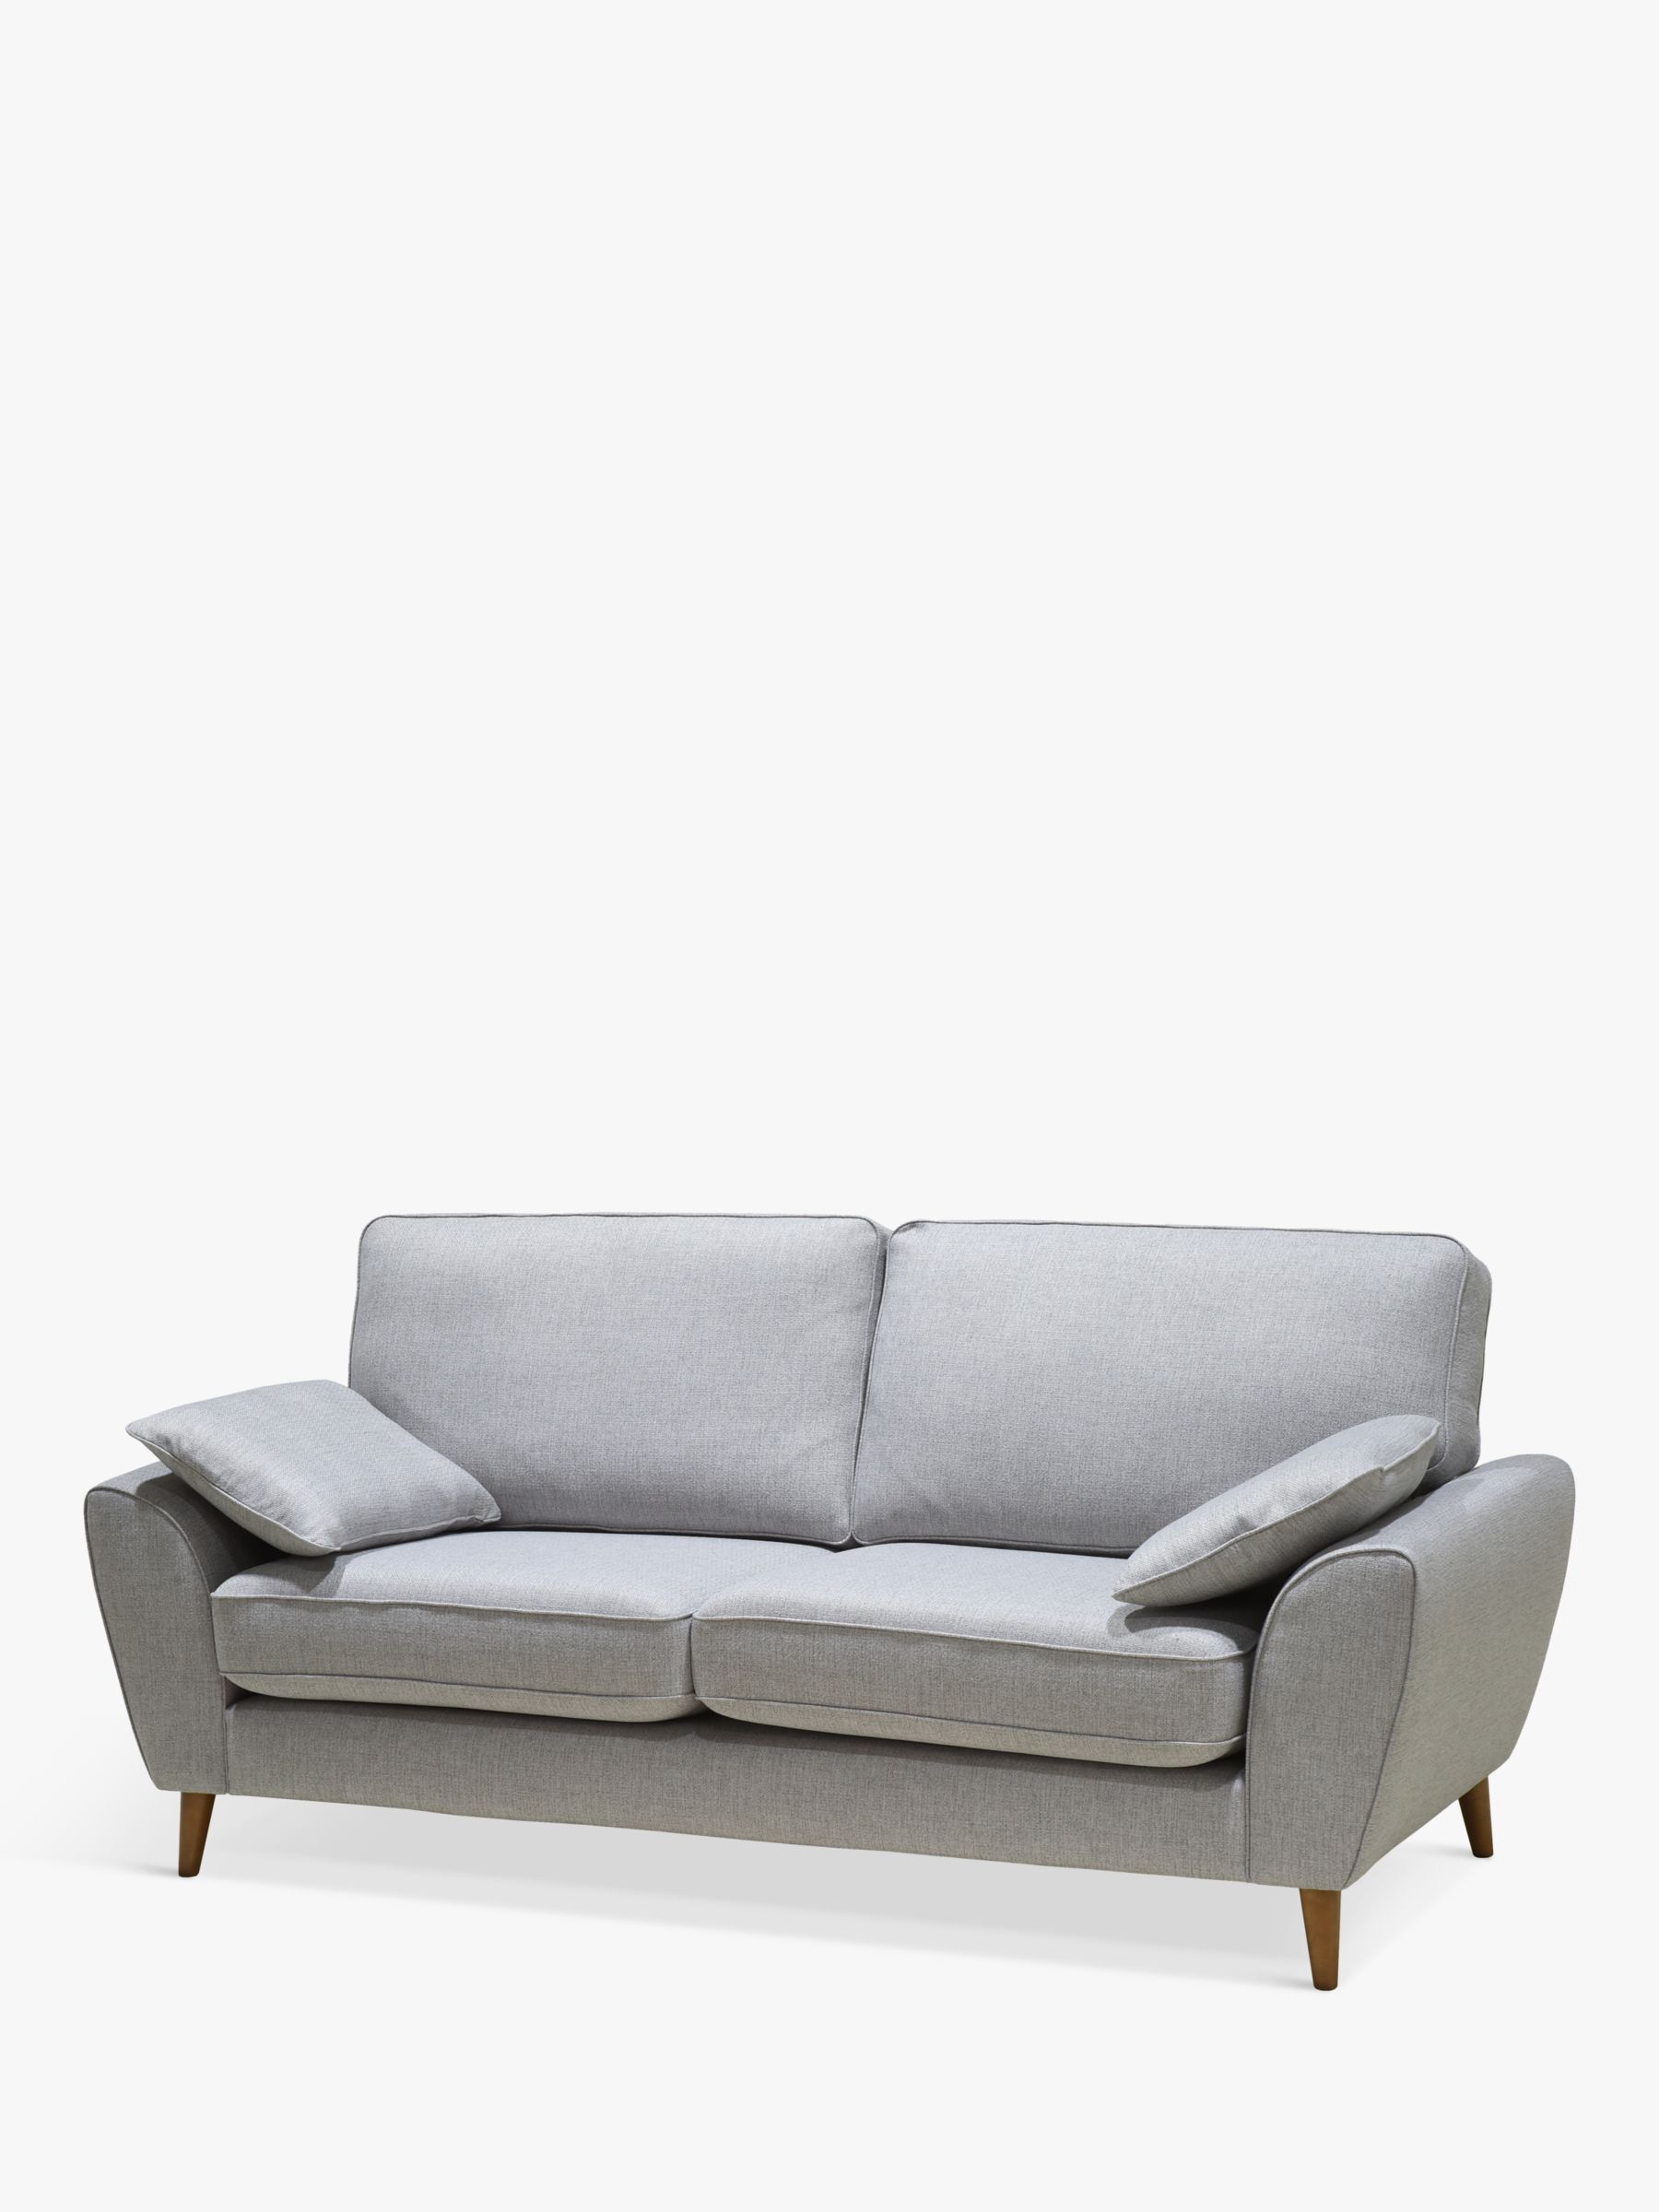 AMBLESIDE Range, John Lewis Ambleside Large 3 Seater Sofa, Dark Leg, Textured Weave Grey